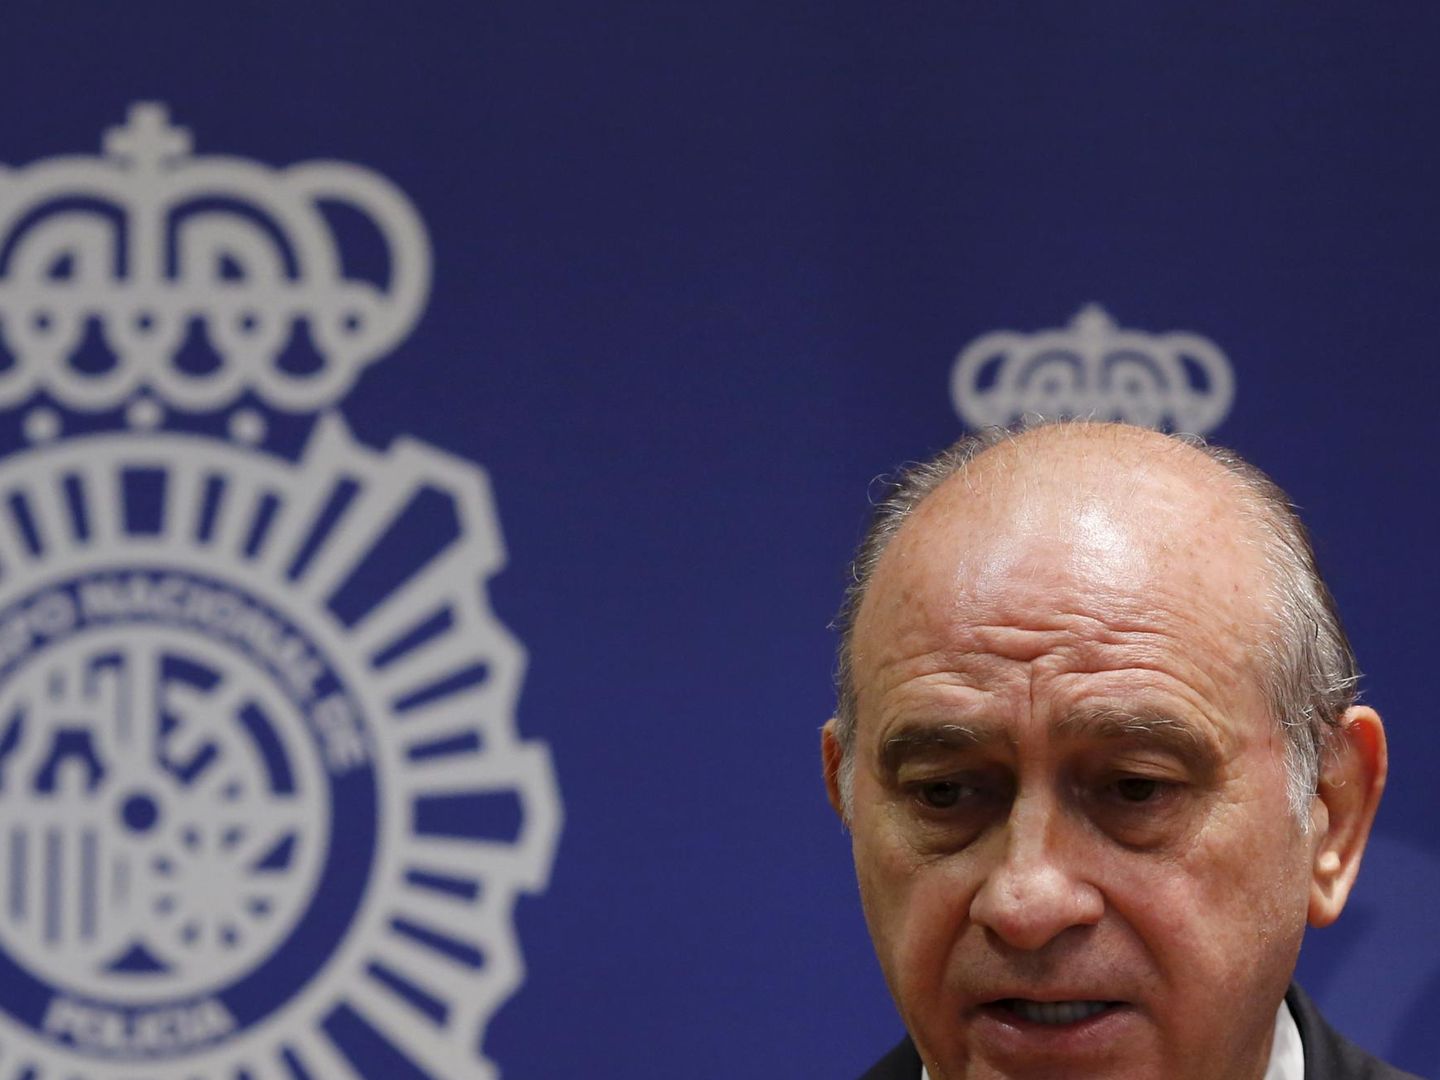 El exministro del Interior Jorge Fernández Díaz, en una foto de archivo de un acto de la Policía Nacional. (Reuters)